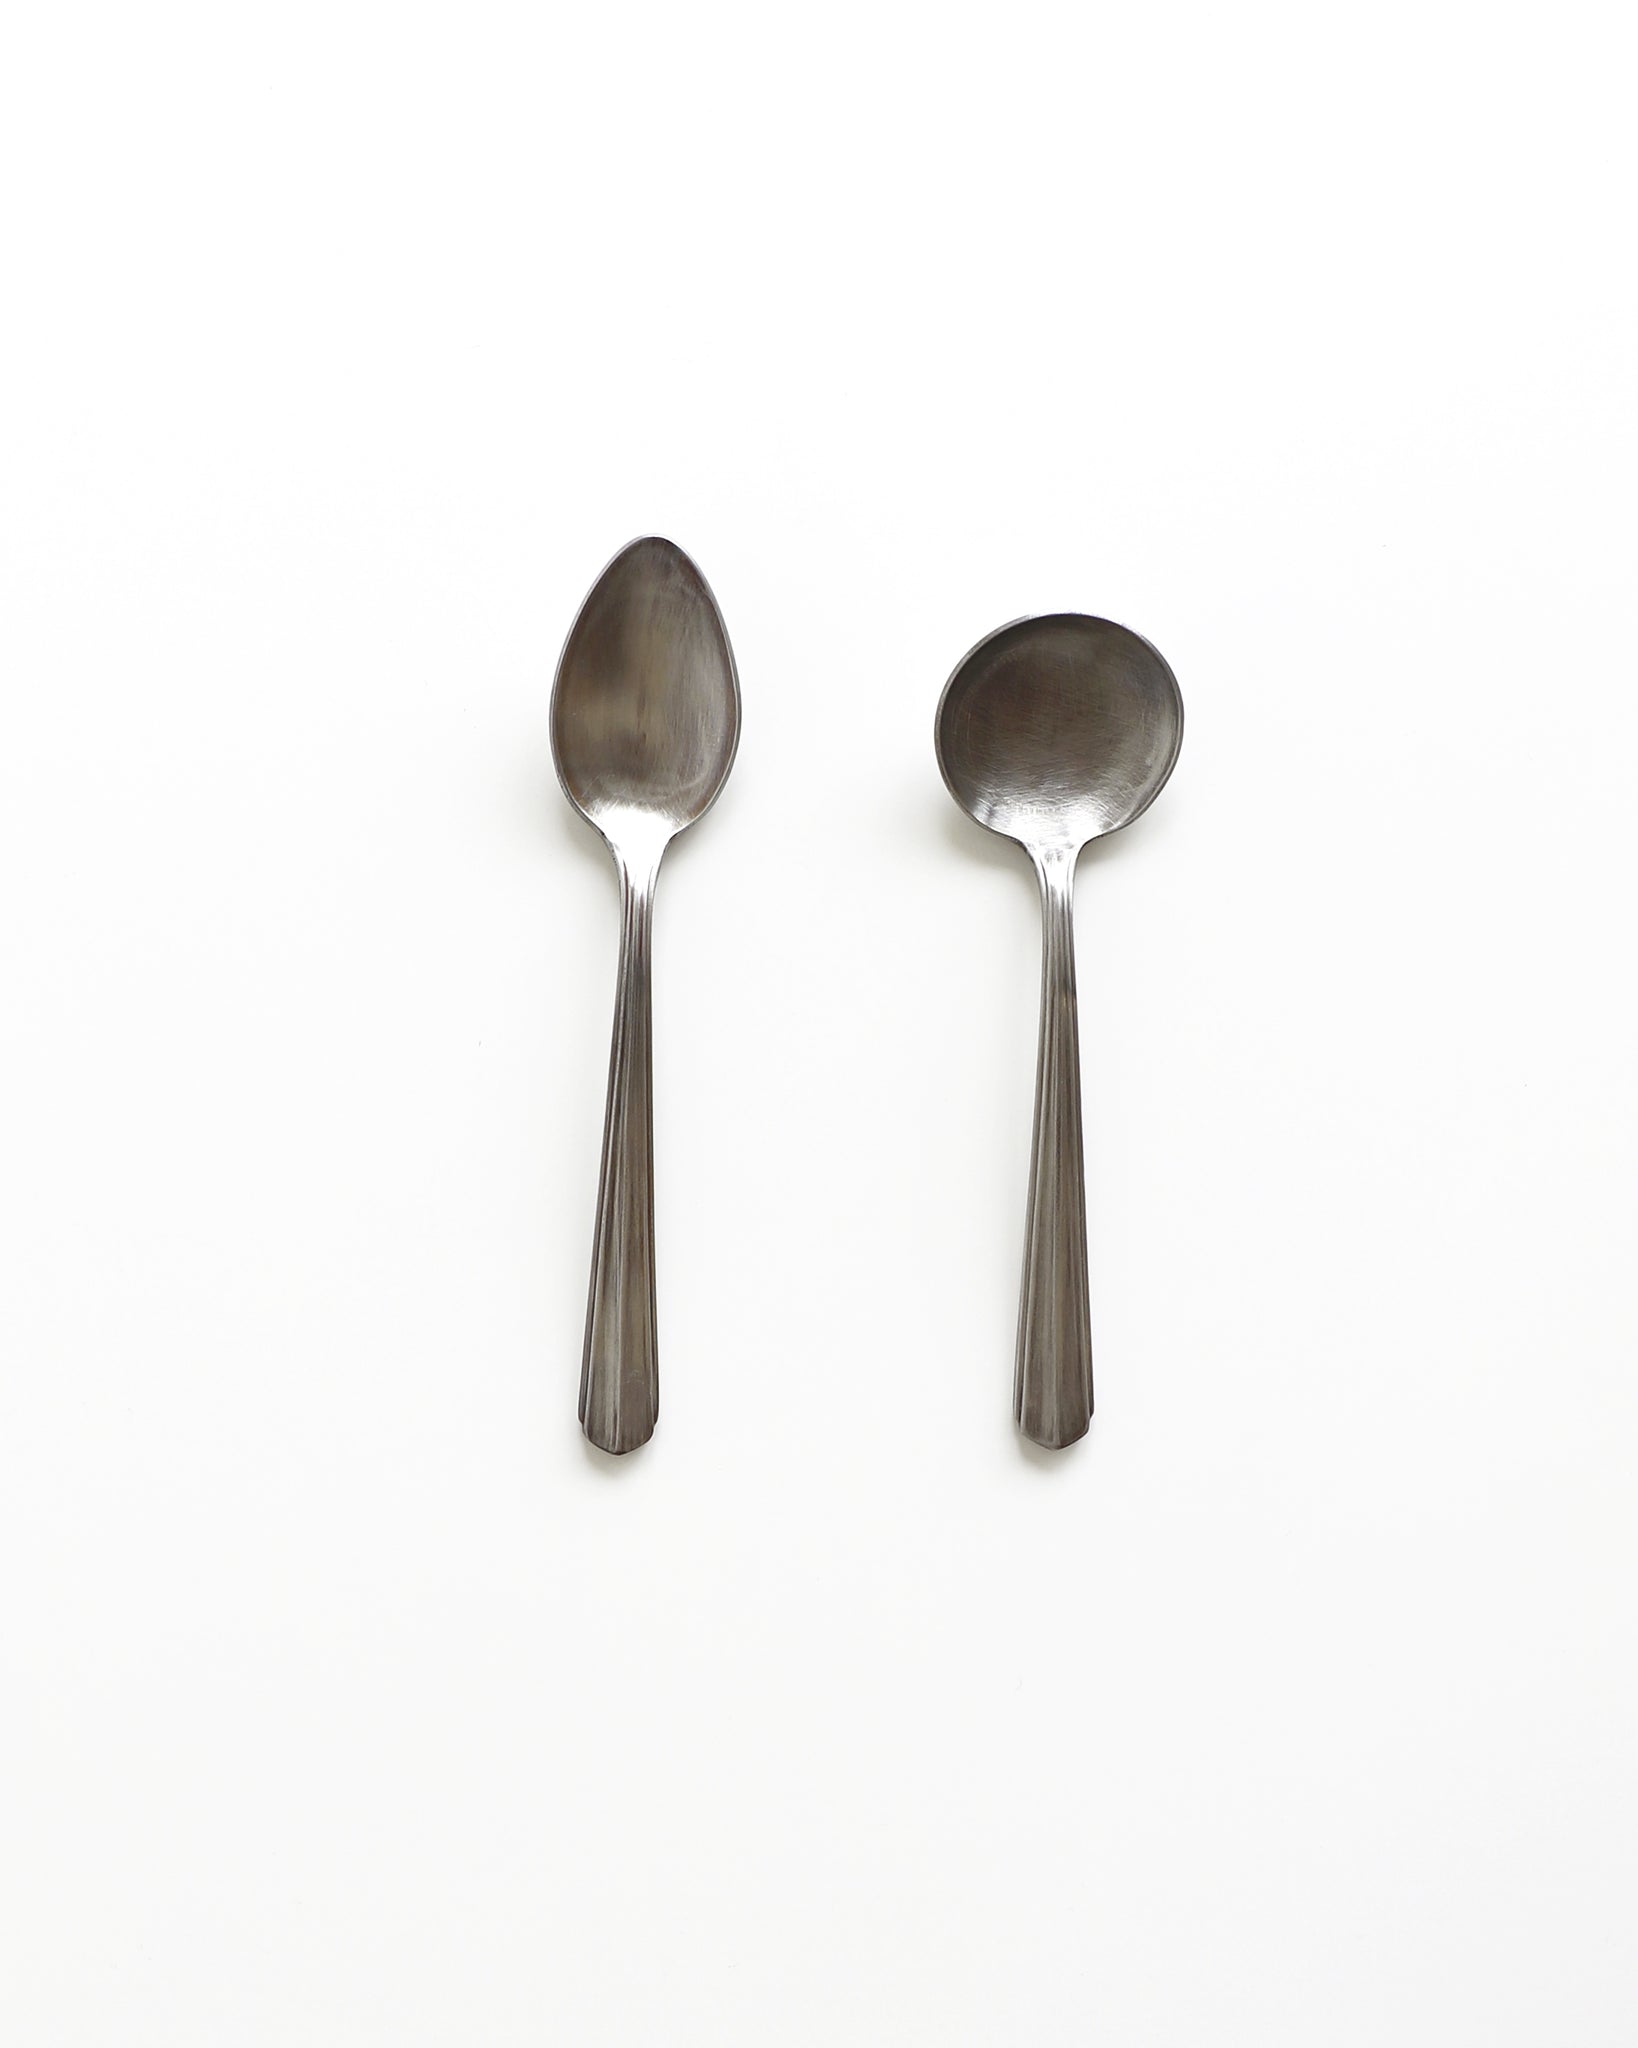 Bouillon Spoon - A / Ryo-022